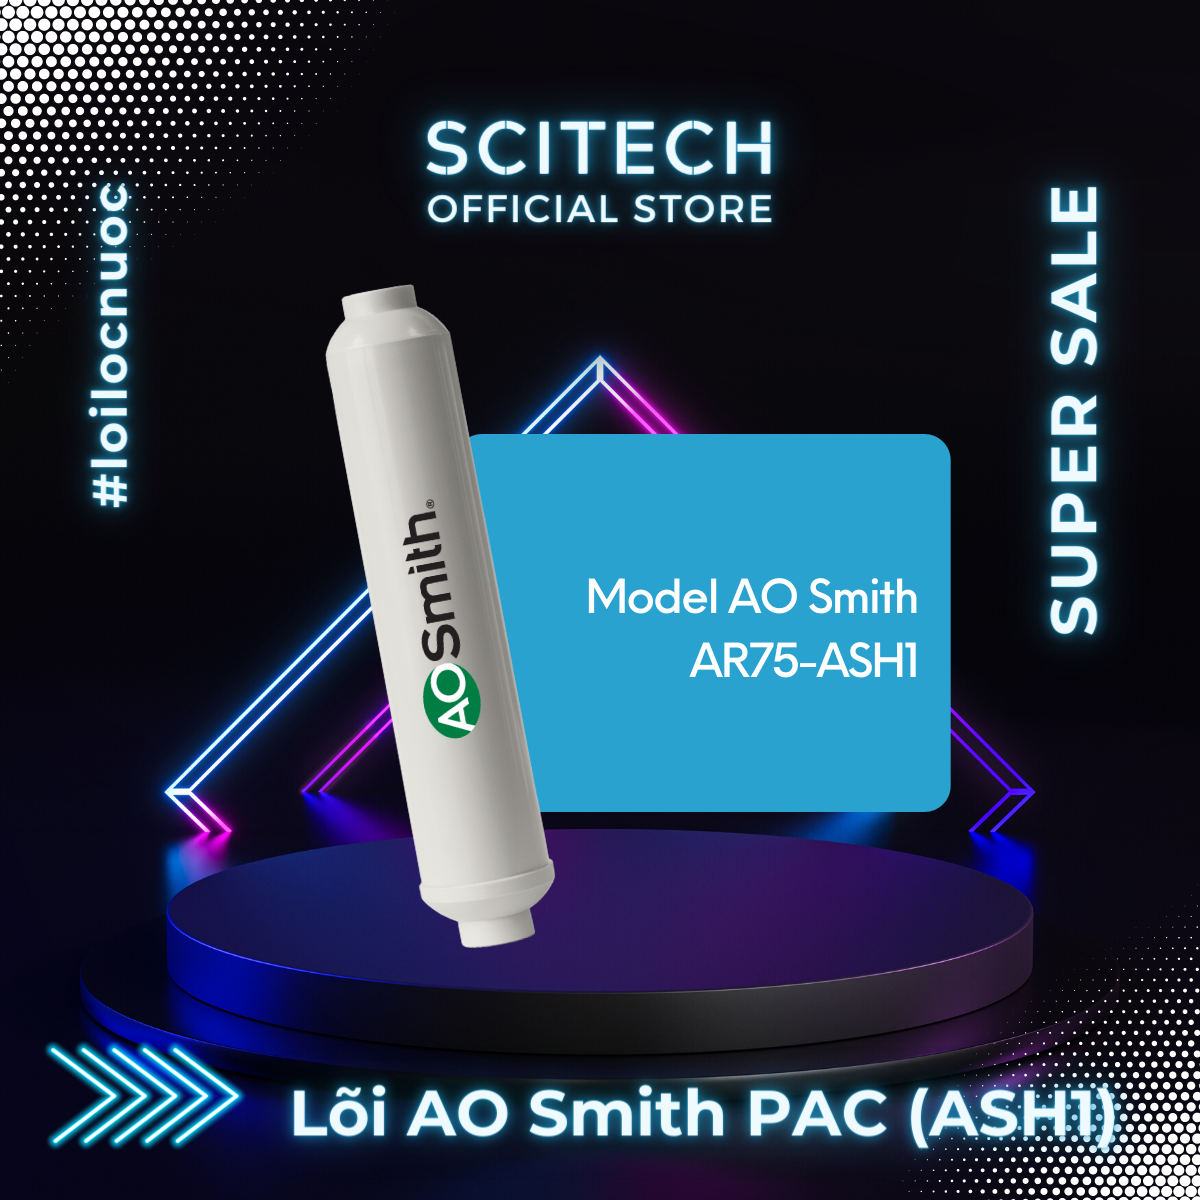 Bộ lõi máy lọc nước AO Smith AR75-ASH1 kèm co nối Scitech cho lõi nối nhanh - Hàng chính hãng